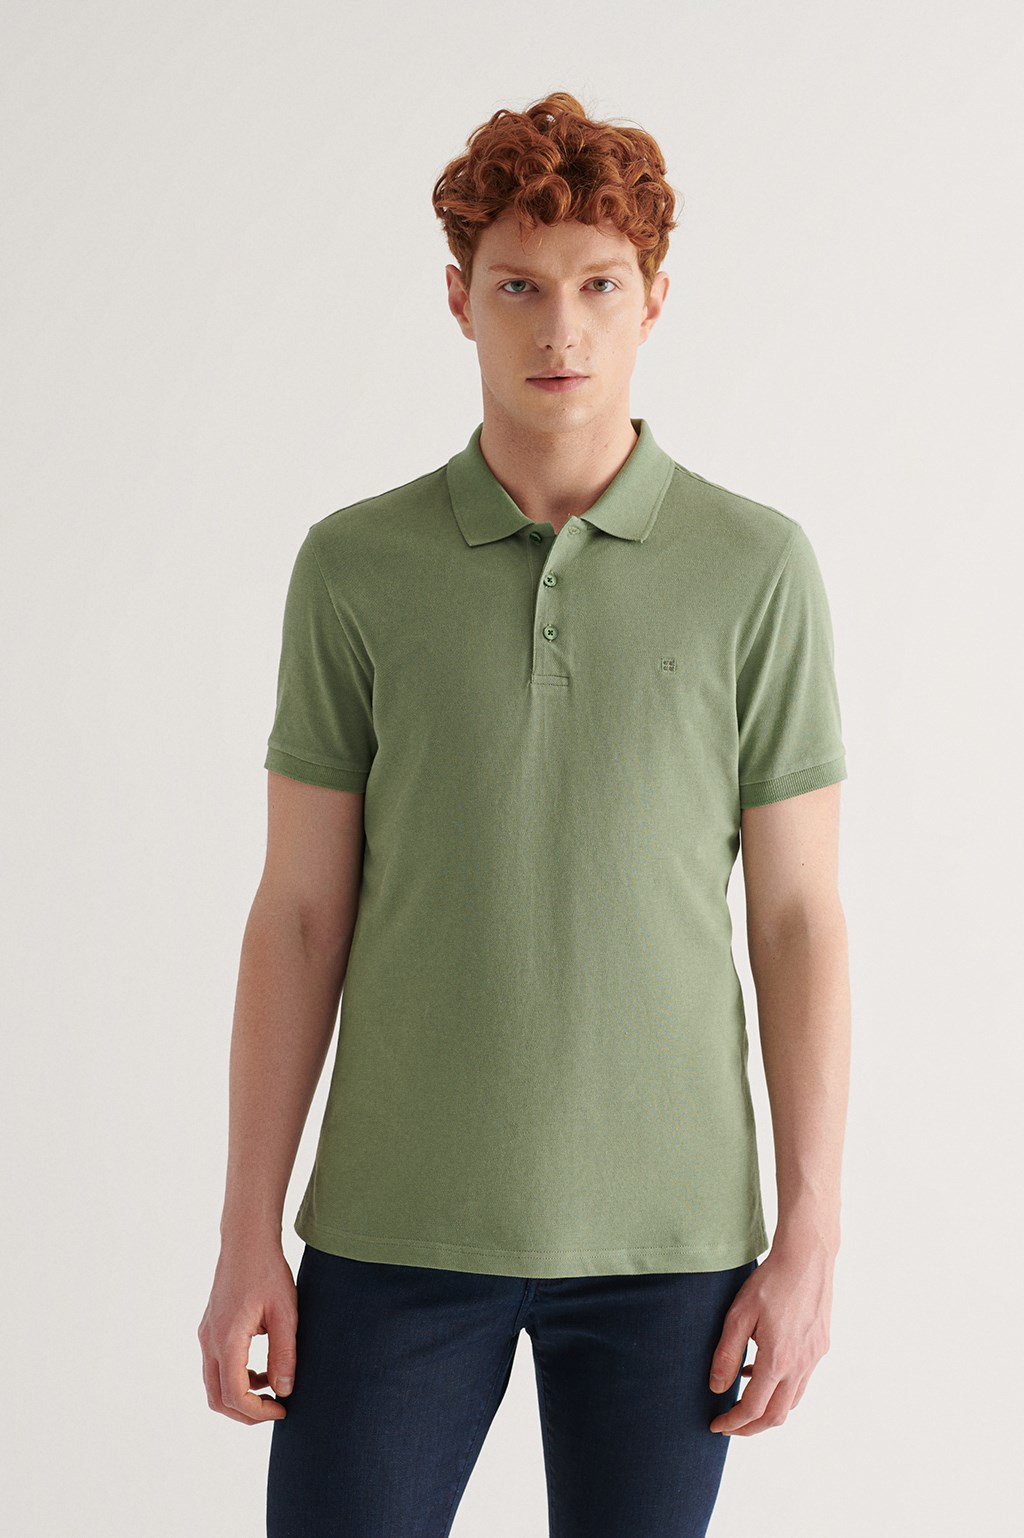 Nil Yeşili Polo Yaka Düz T-Shirt E001004-132 - AVVA